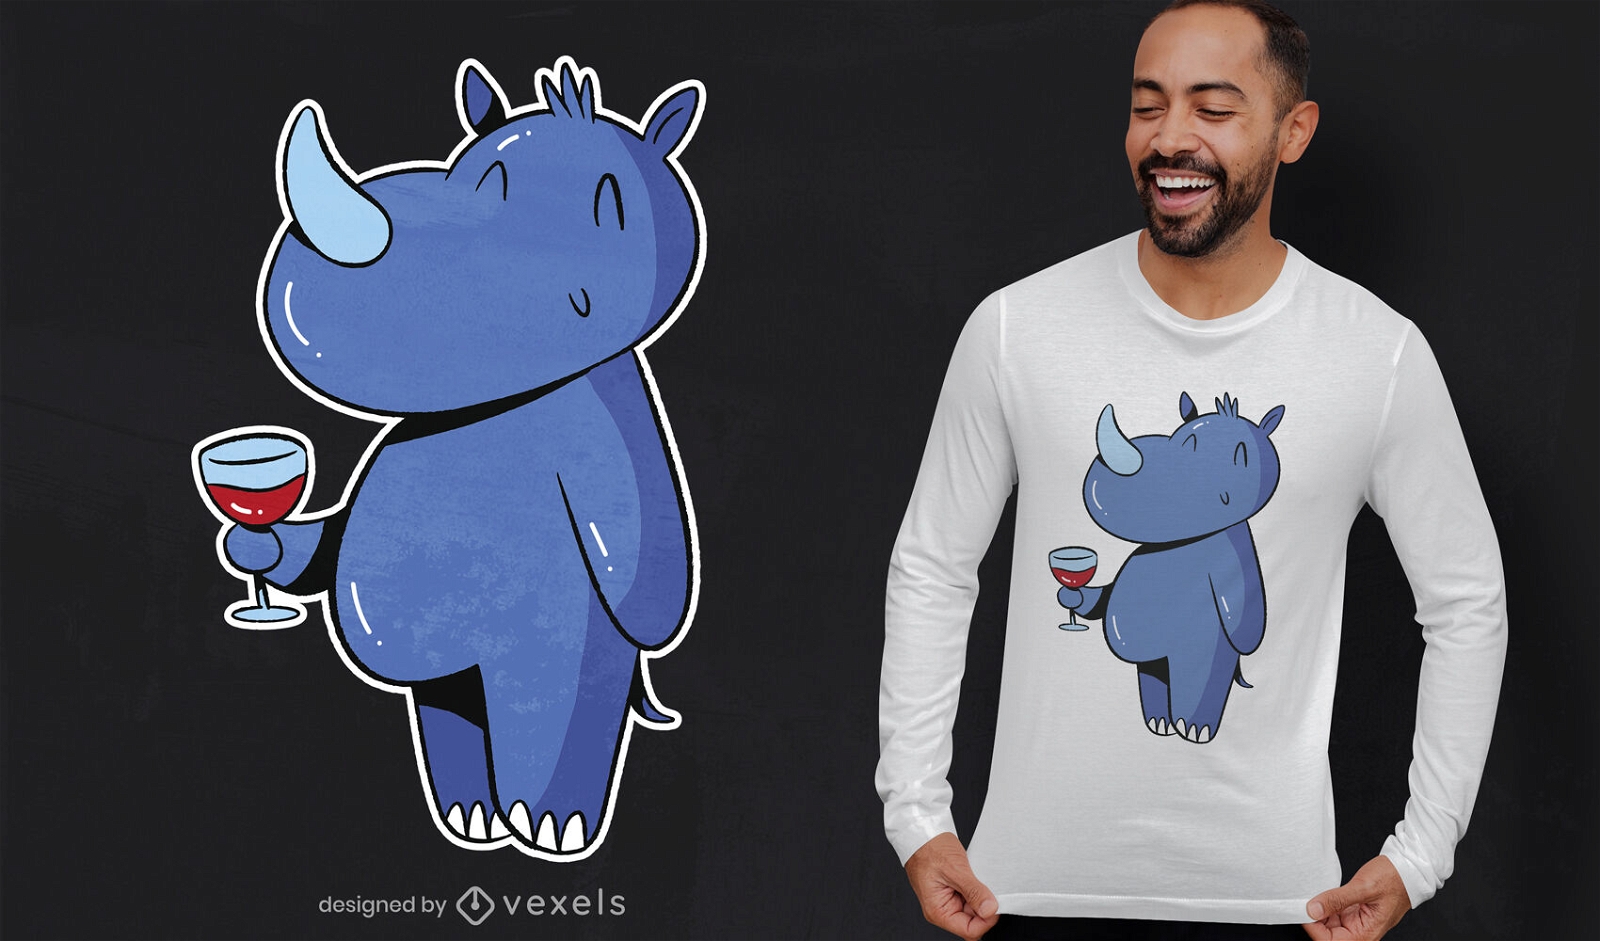 Rinoceronte con diseño de camiseta de vino.